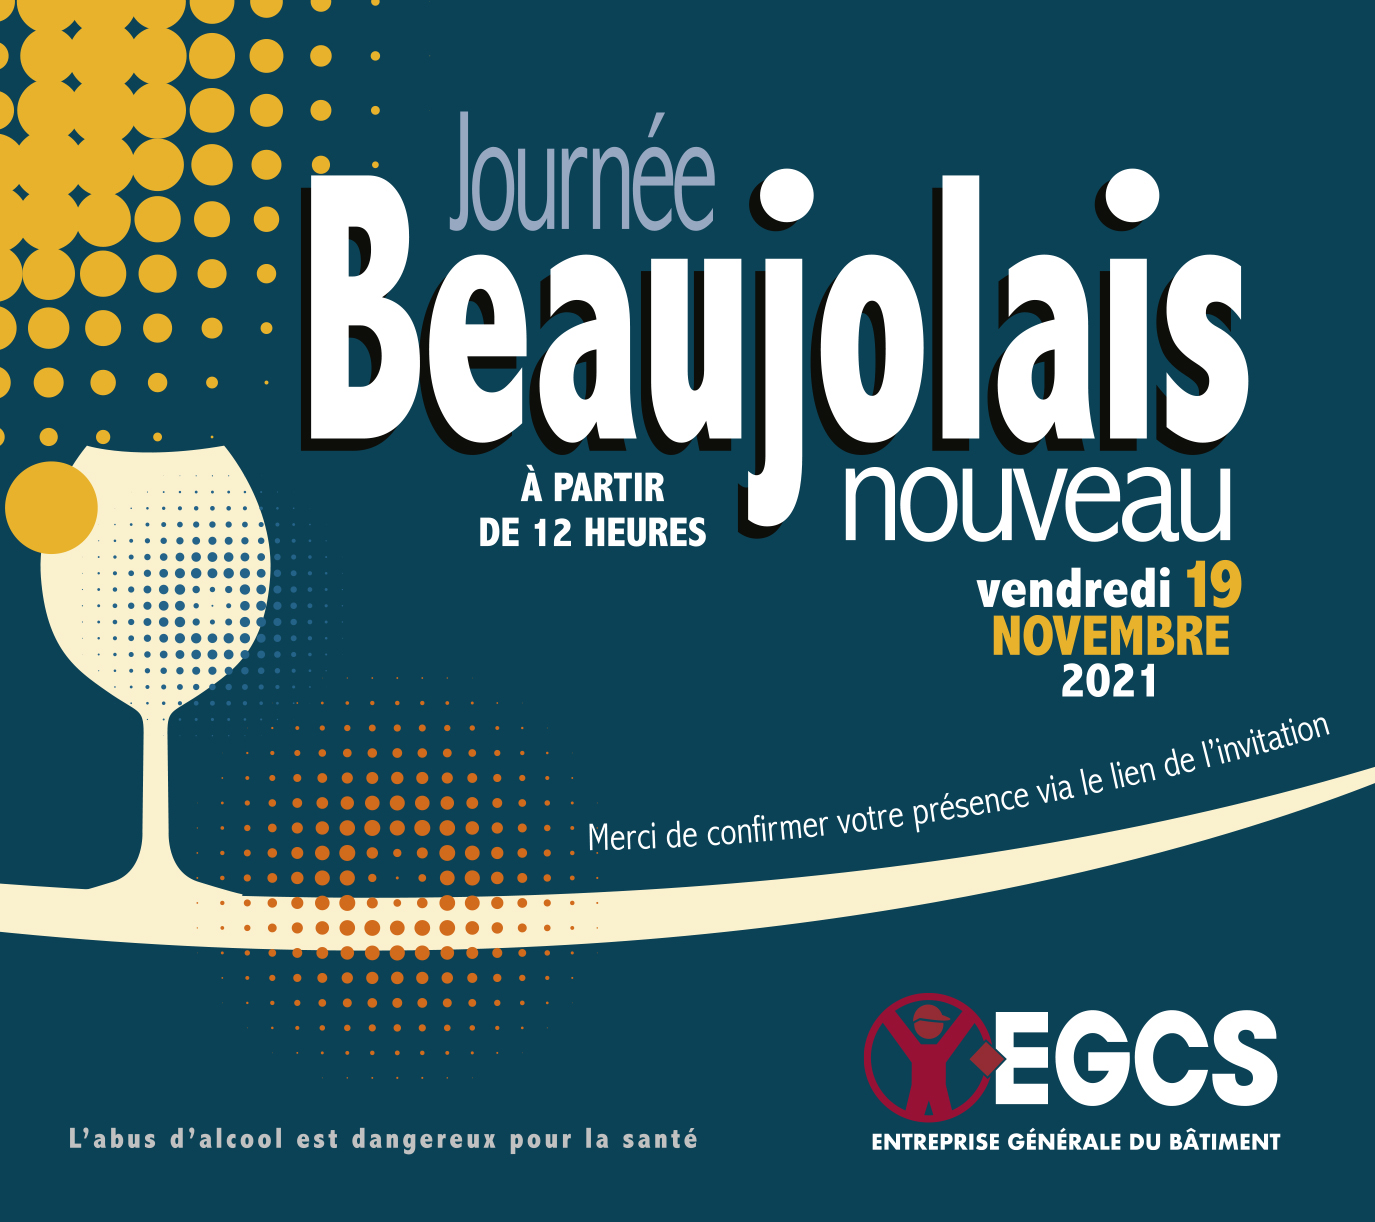 L'entreprise EGCS organise chaque année le Beaujolais nouveau avec ses partenaires